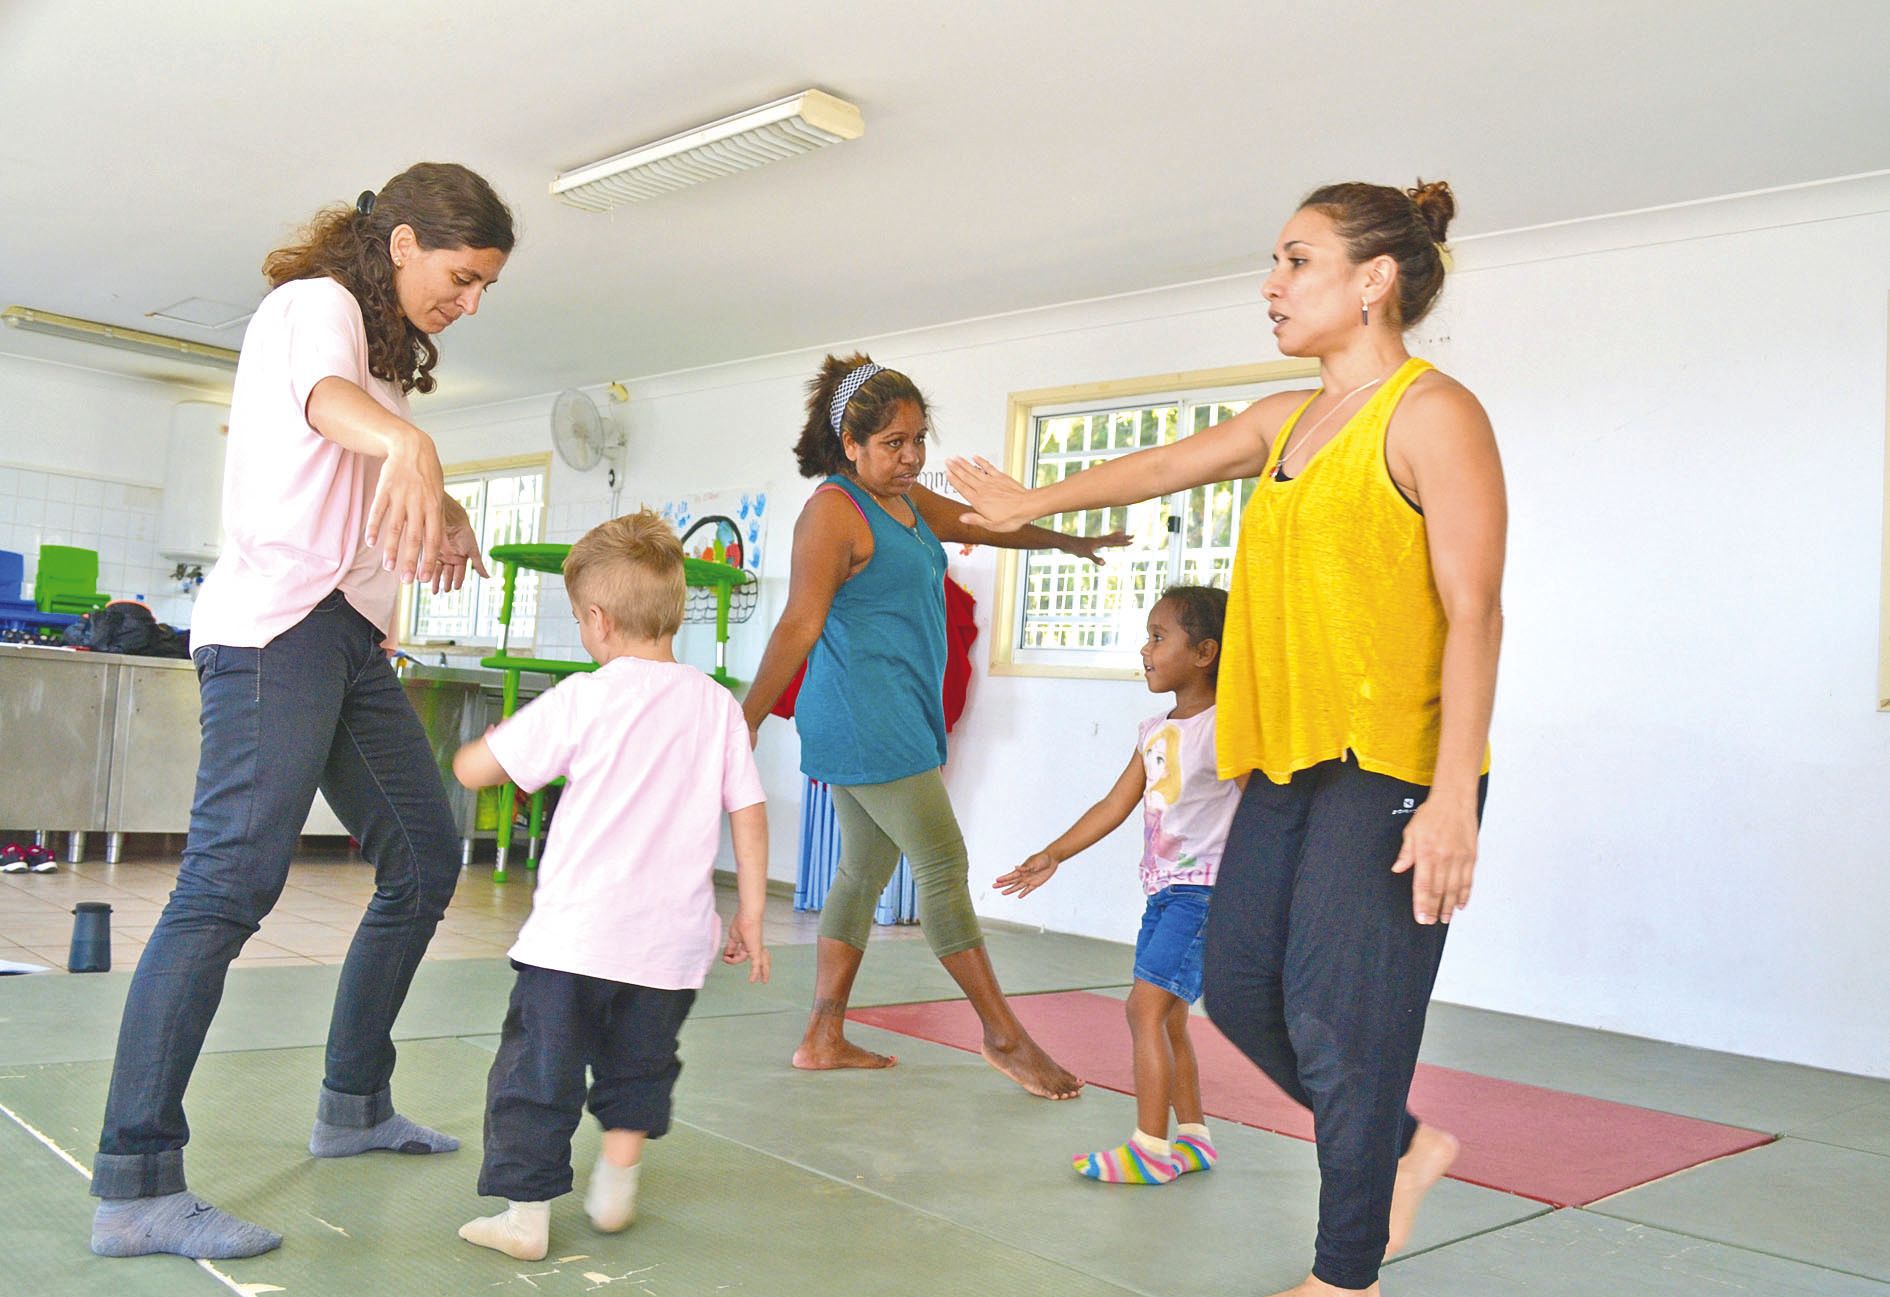 Avec l’atelier d’éveil corporel, « le parent et l’enfant se retrouvent tous les deux en exercice, ce qui permet de se découvrir différemment »,  estime Maéva Asi, professeur de danse.